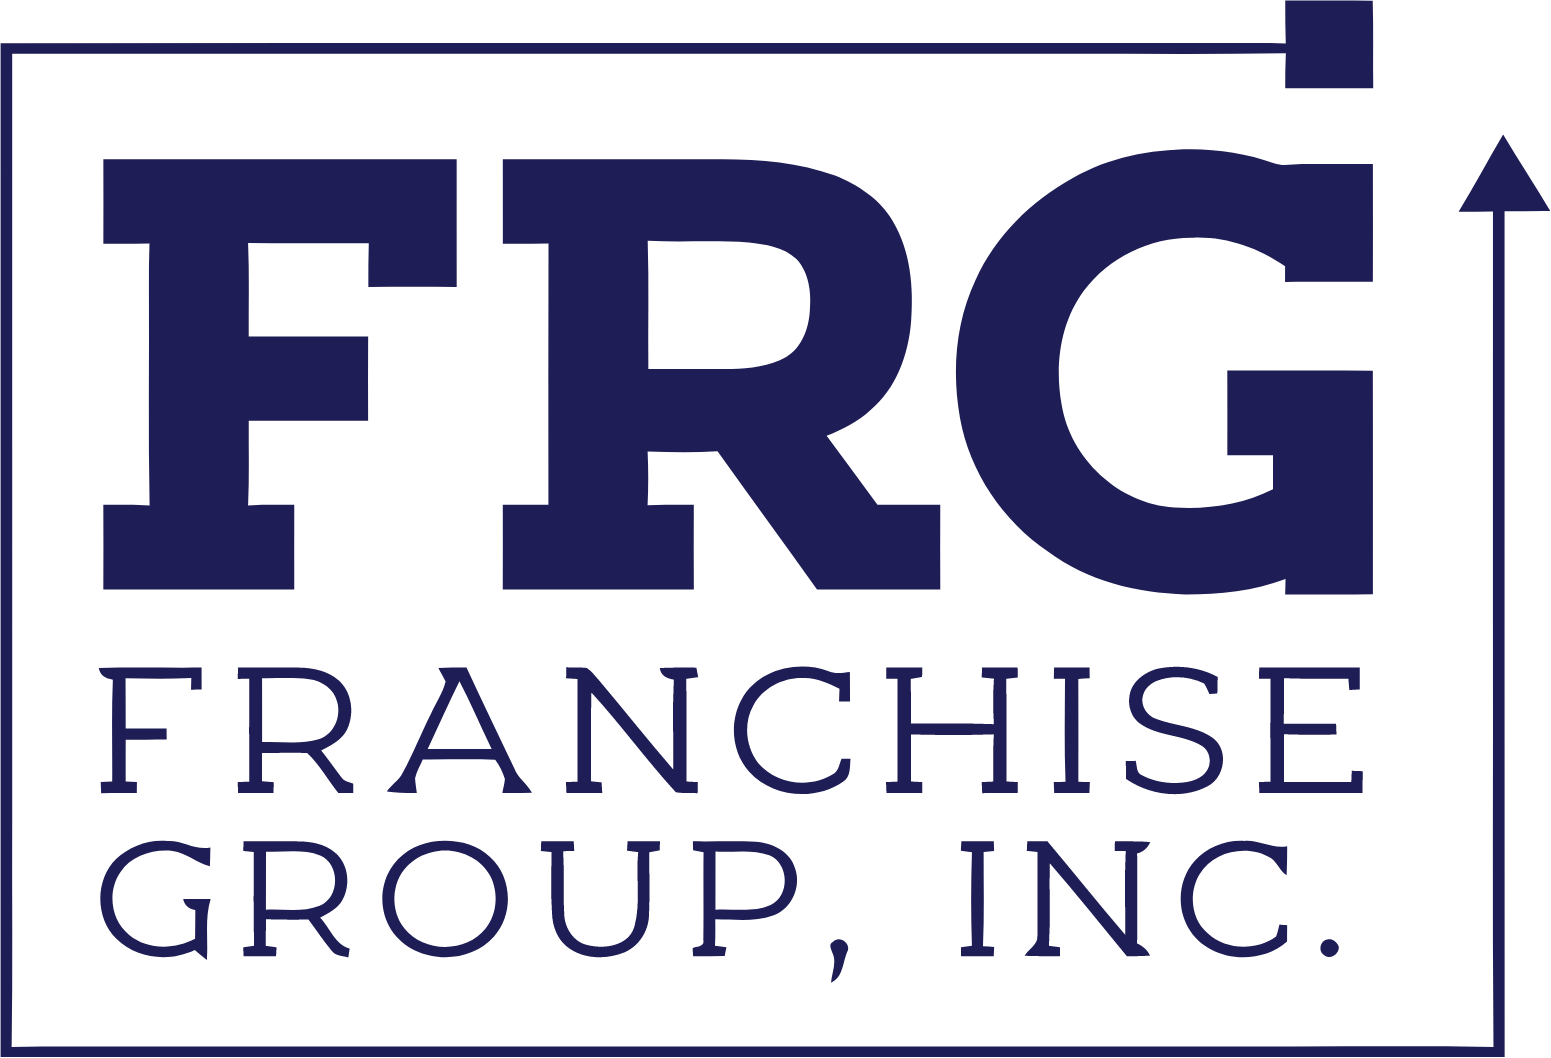 Franchise Group logo large (transparent PNG)